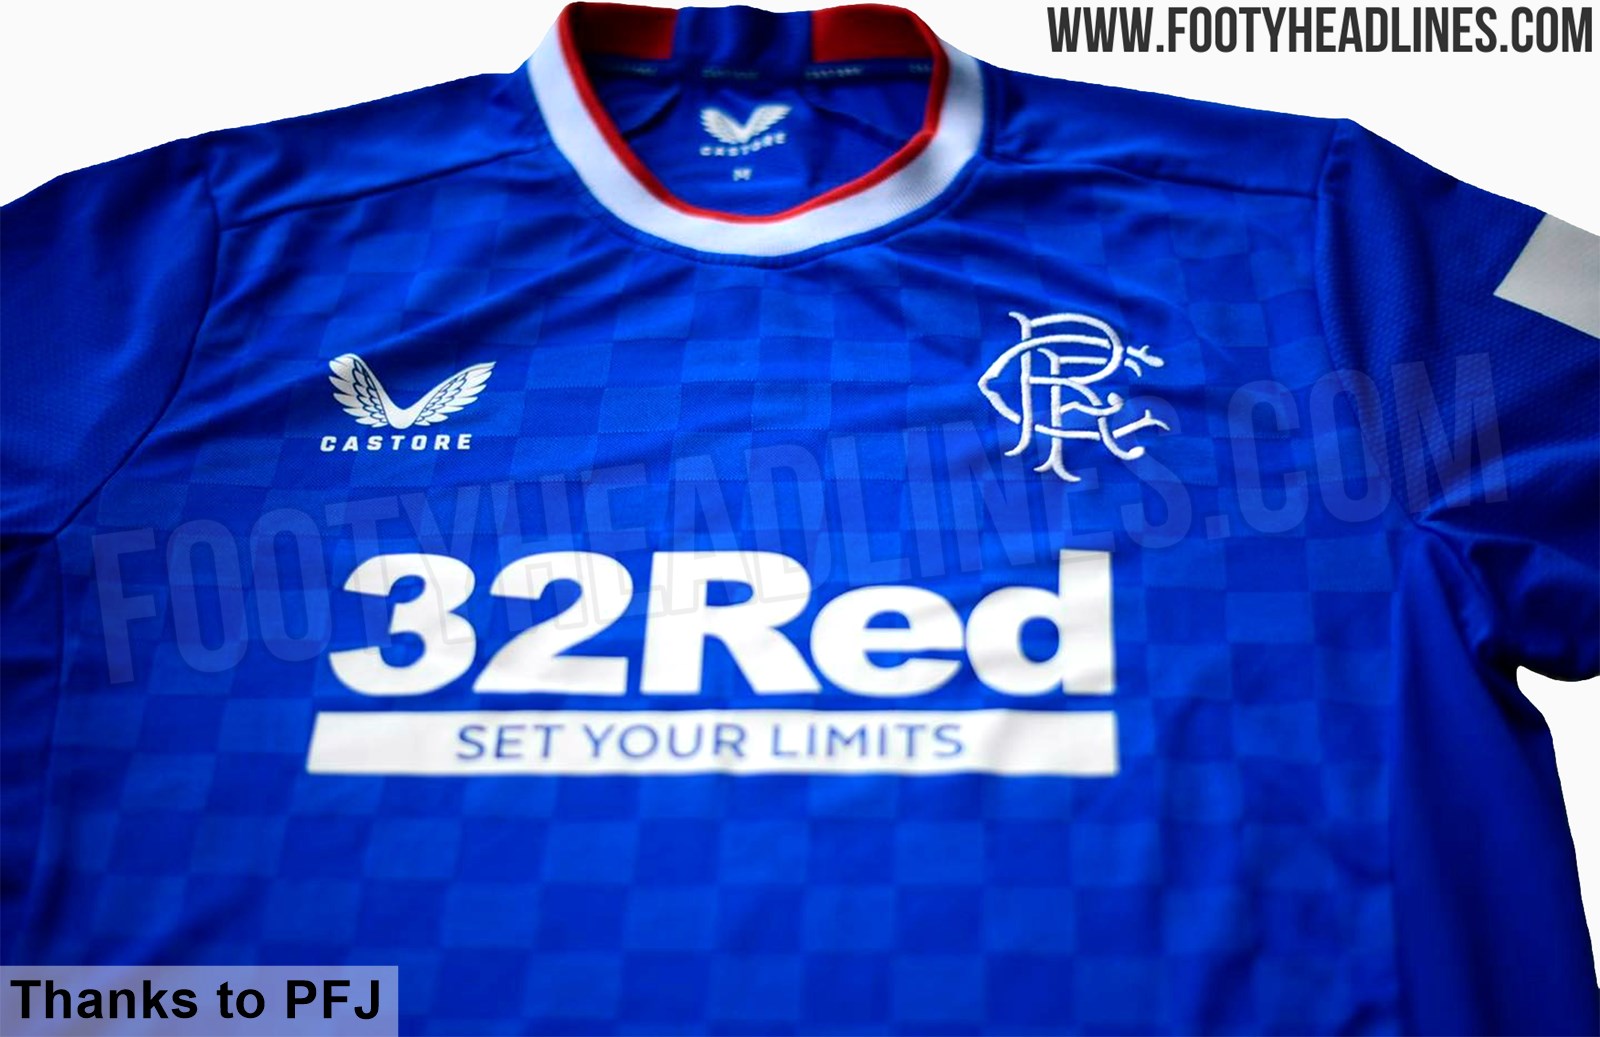 Rangers 21-22 Home Kit Leaked? - Footy Headlines